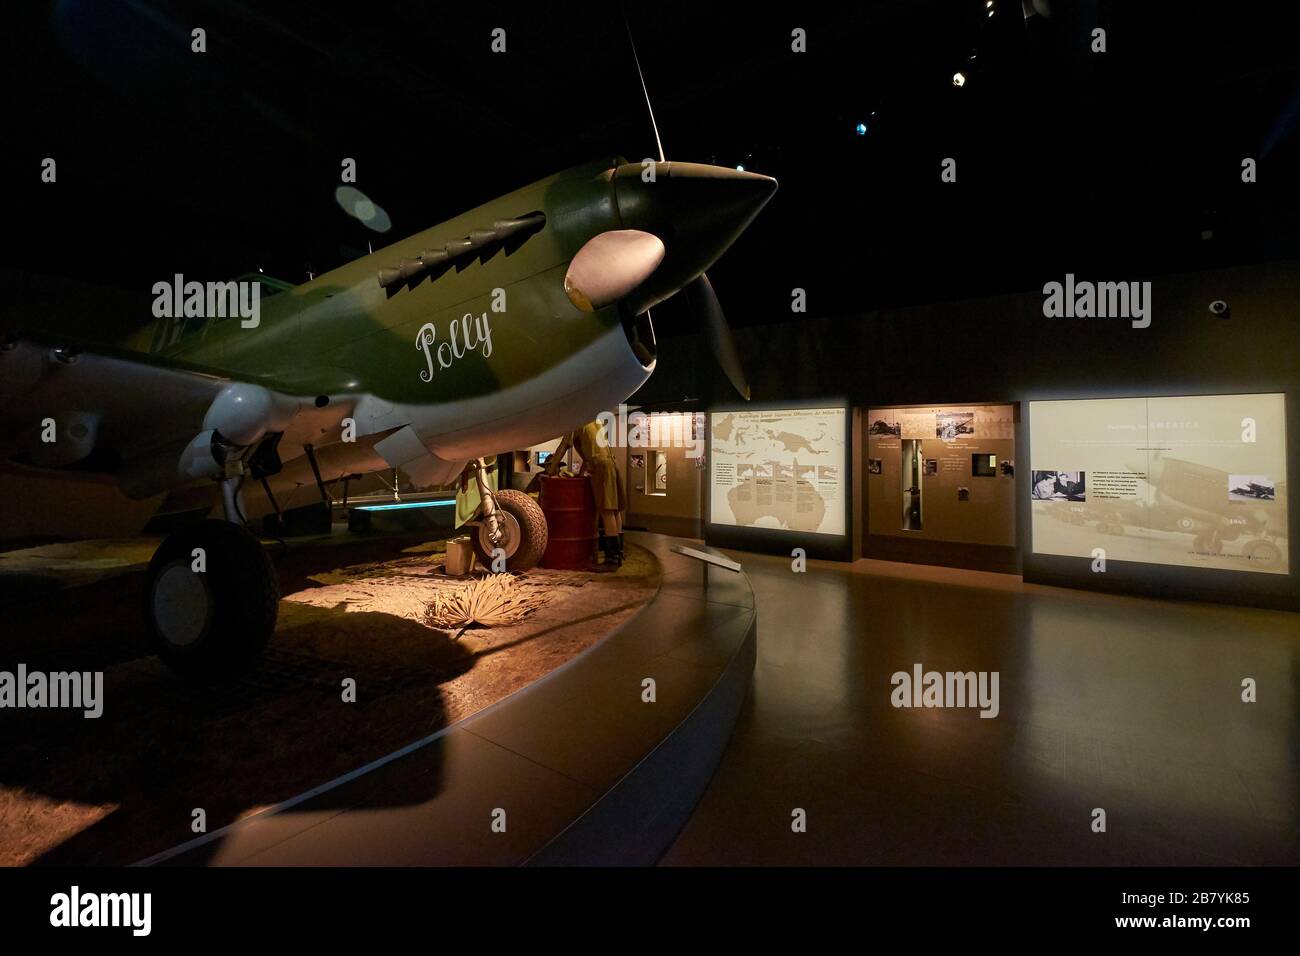 Ein frühes Militär-Propellerflugzeug. Im war Memorial Museum in Canberra, NSW, Australien. Stockfoto